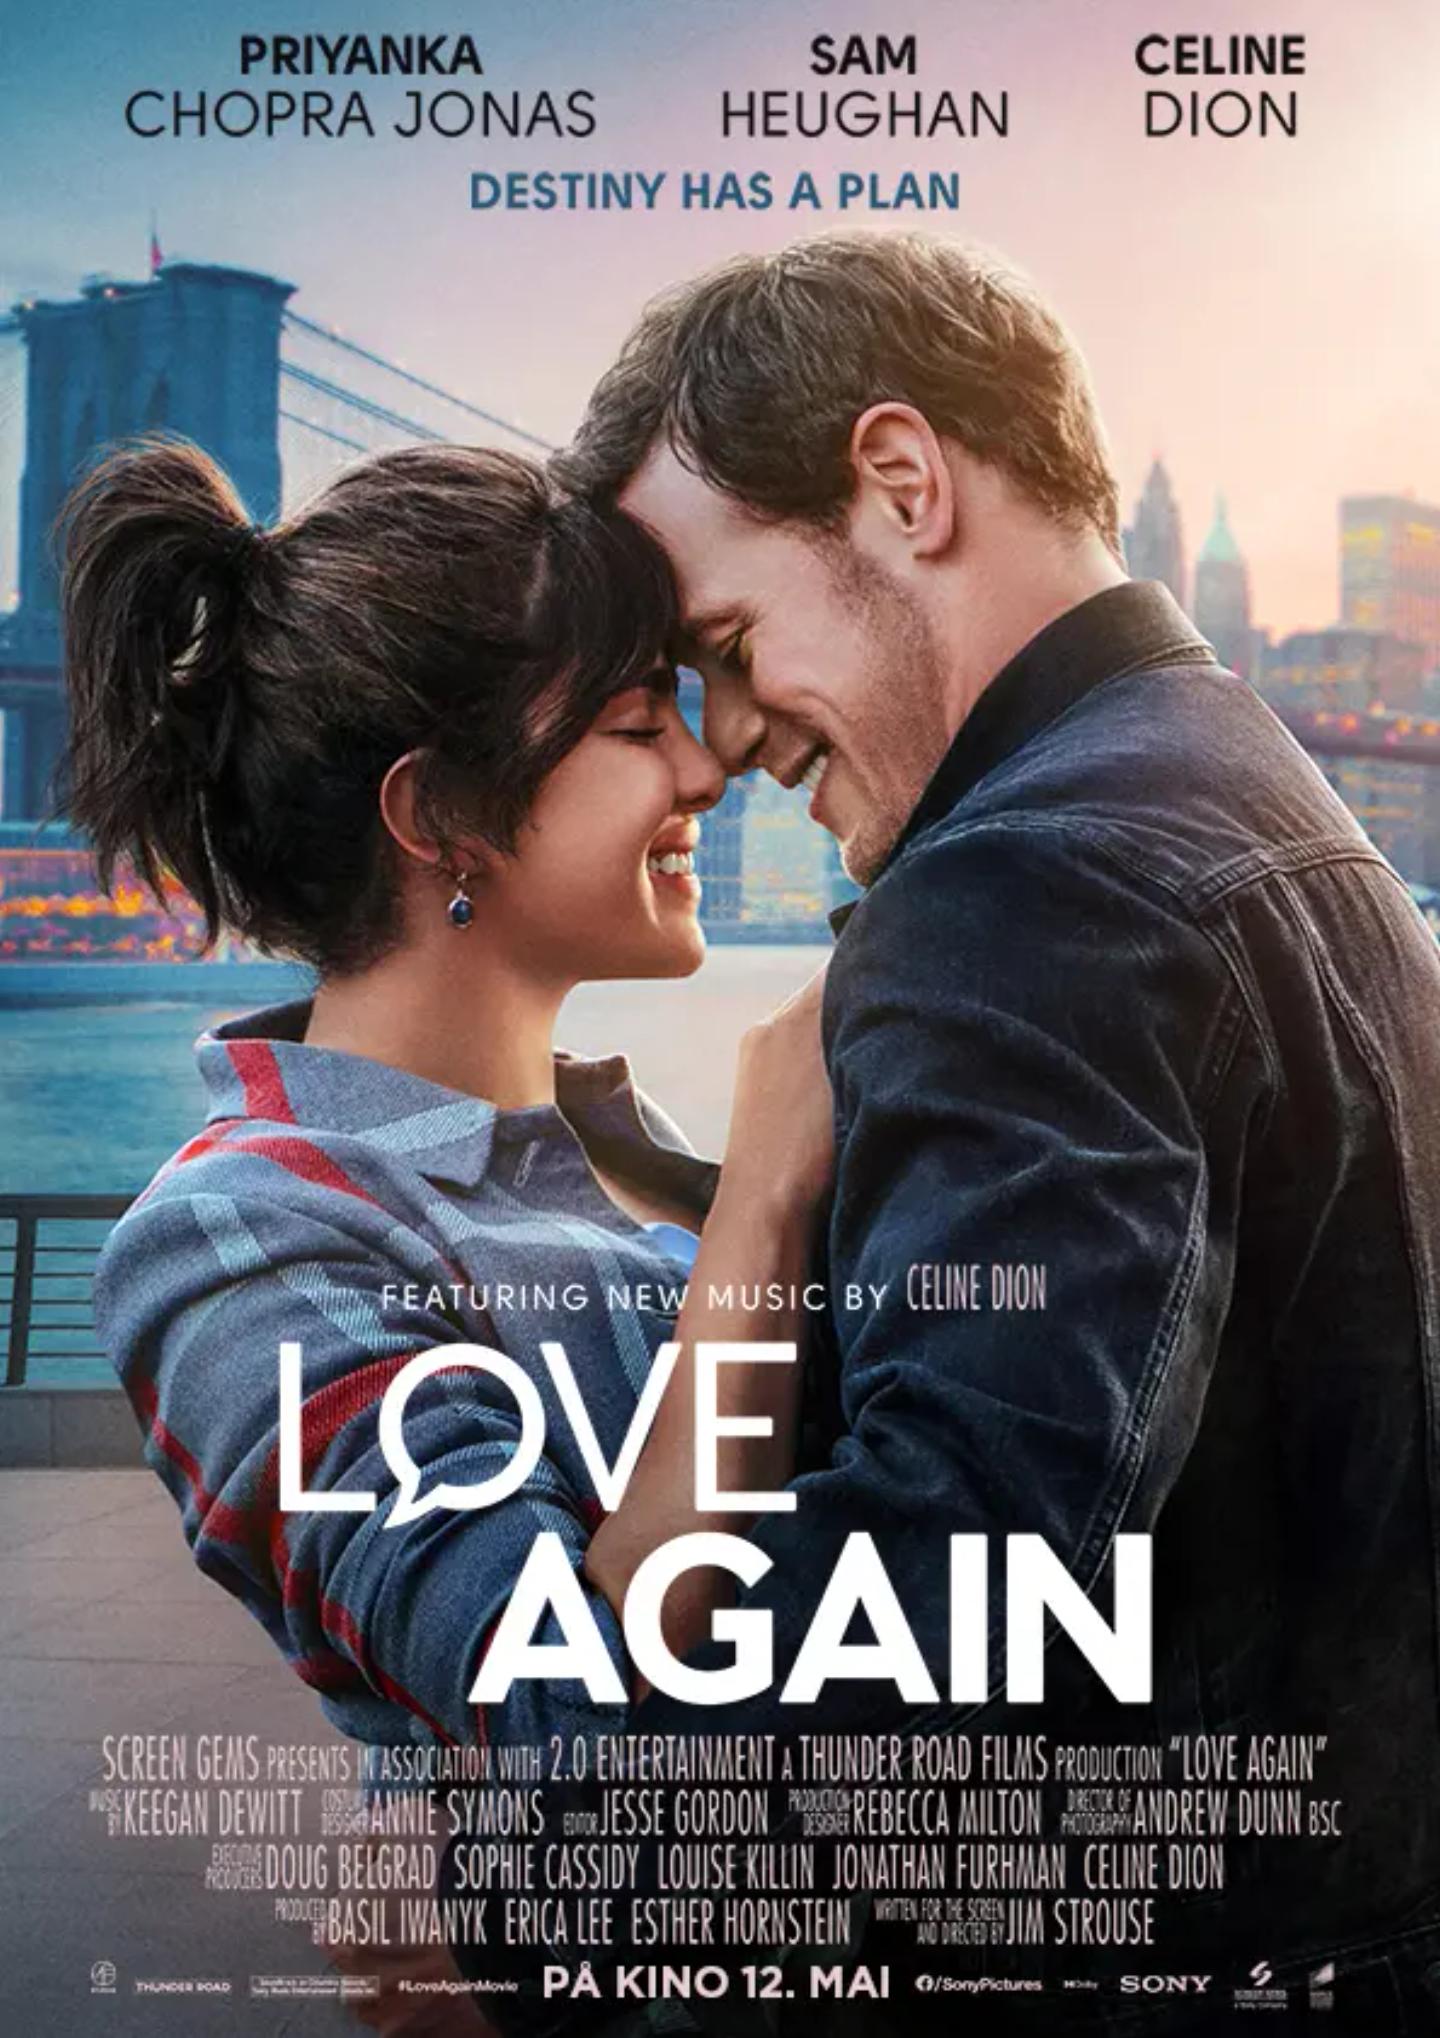 Plakat for 'Love Again'